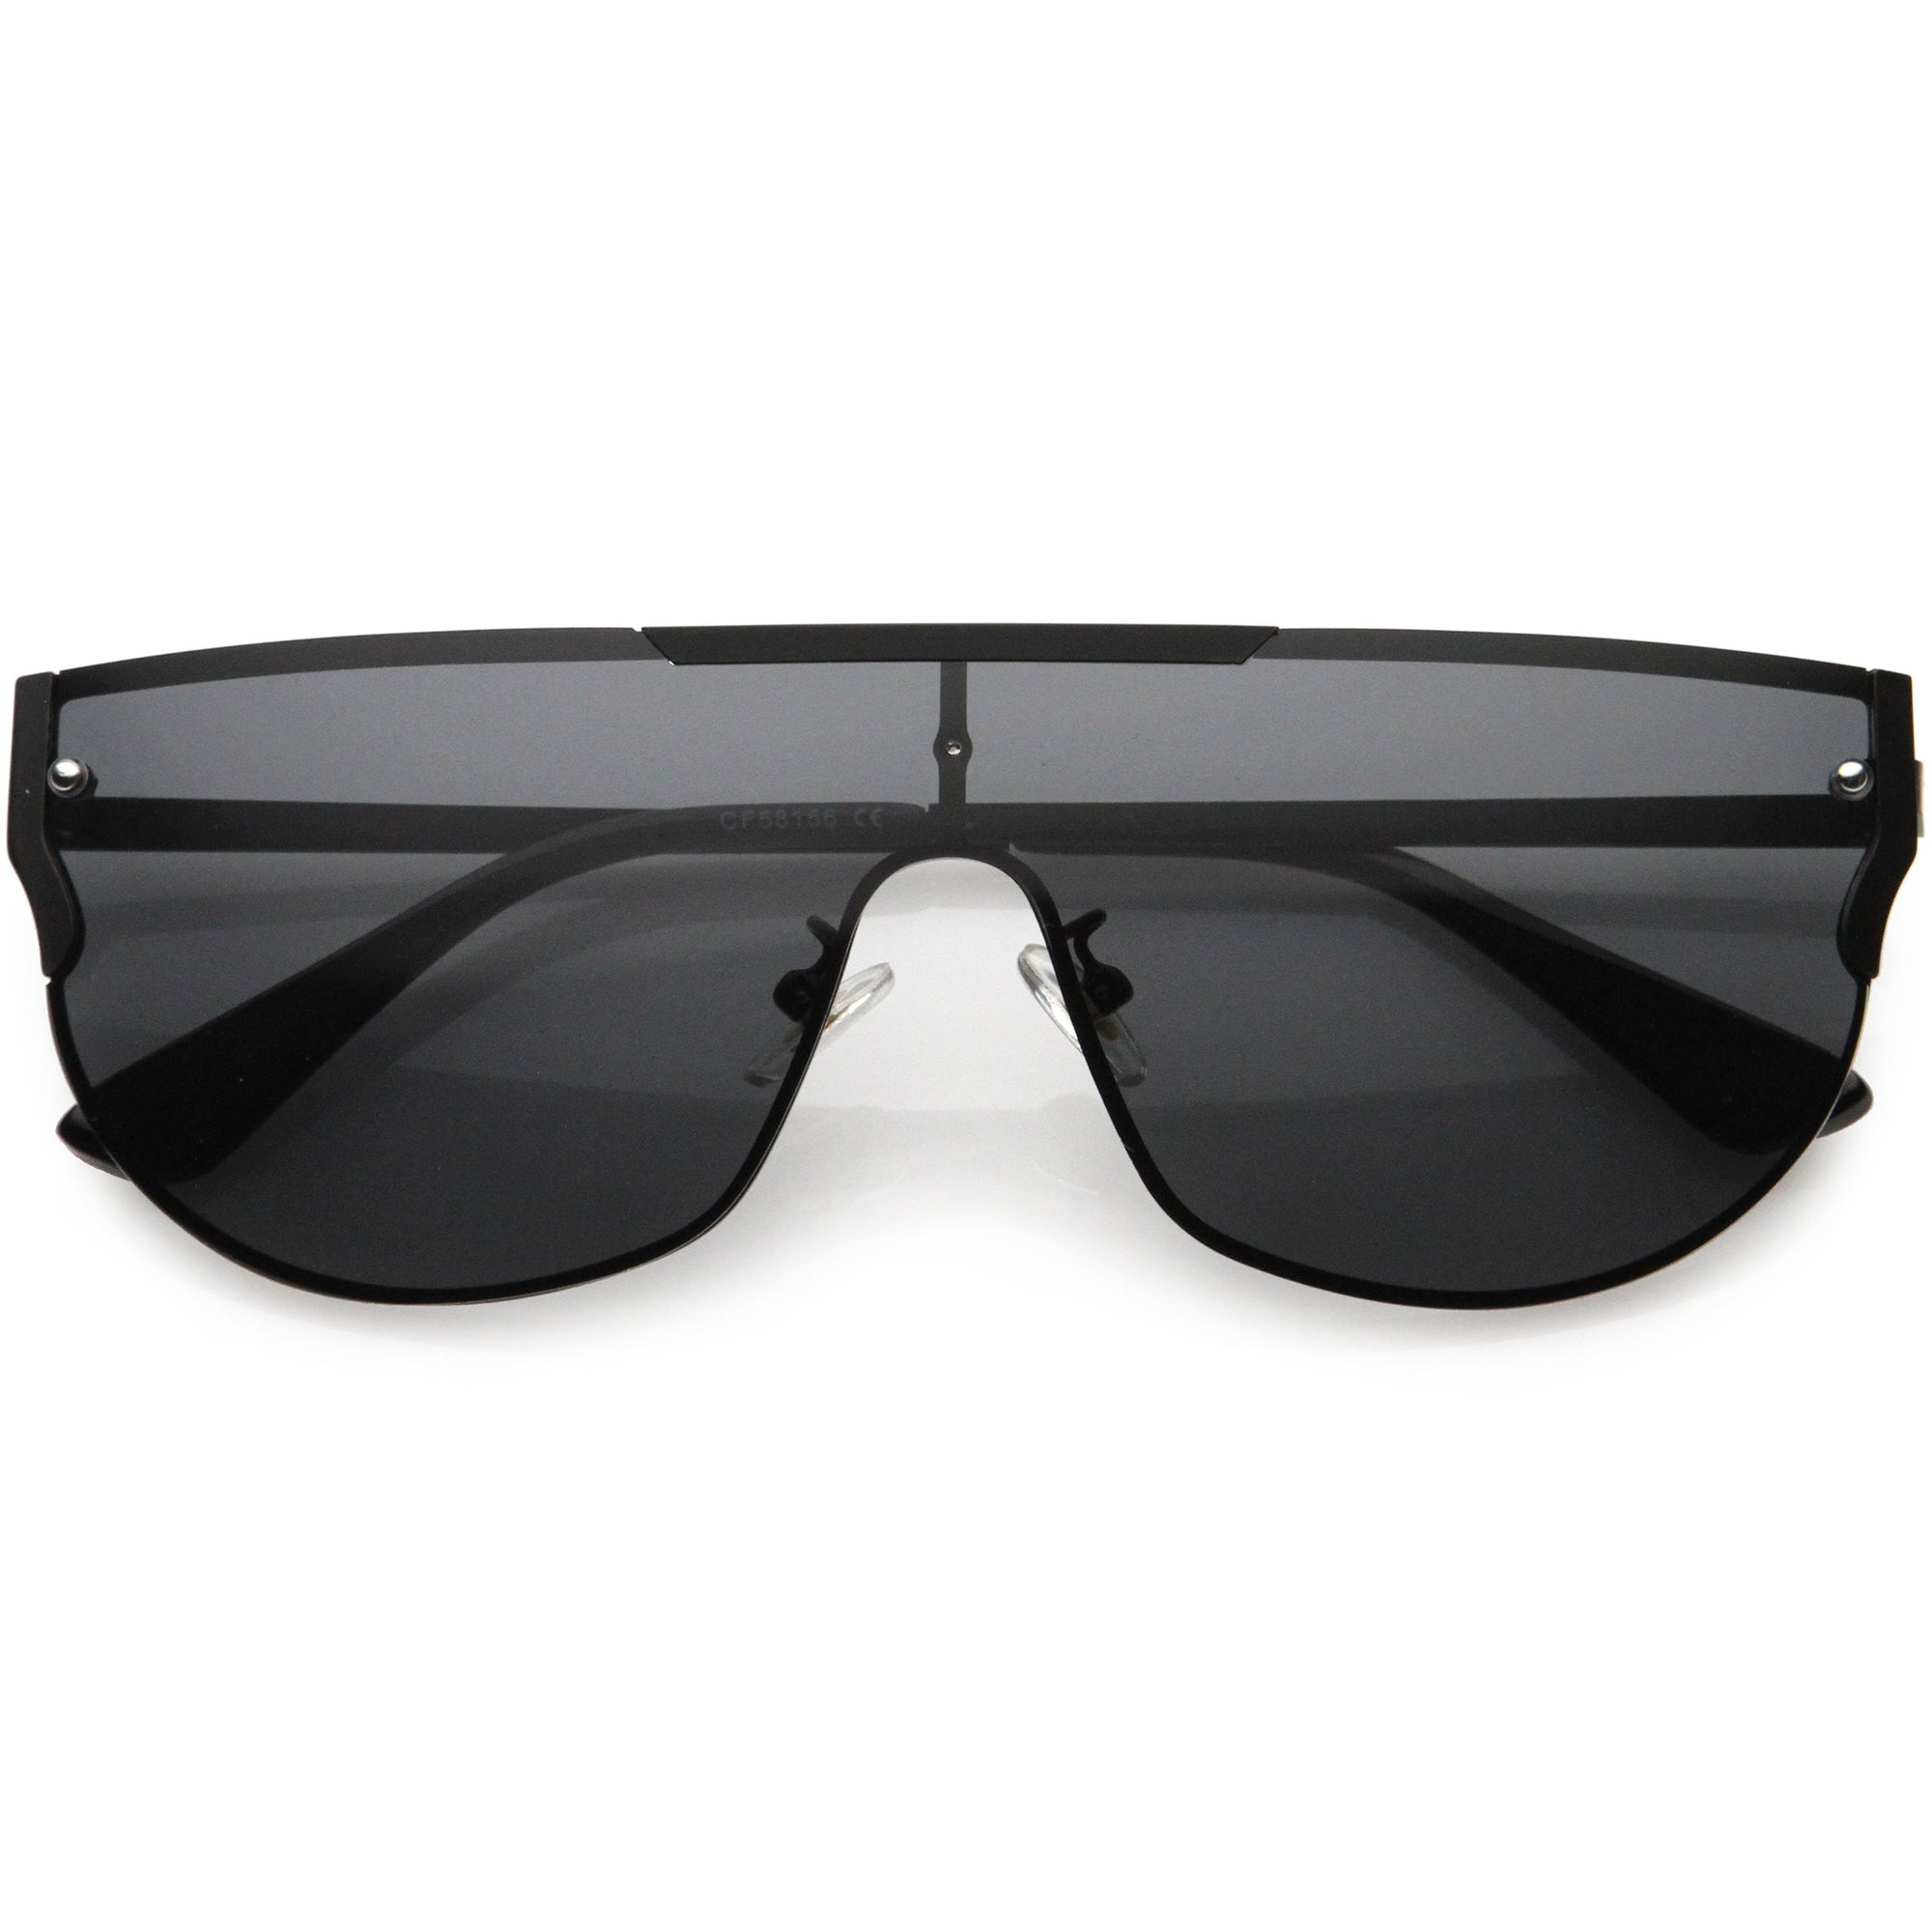 Gafas de sol con protección superior plana y detalle de ribete metálico inspiradas en diseñadores de lujo D024